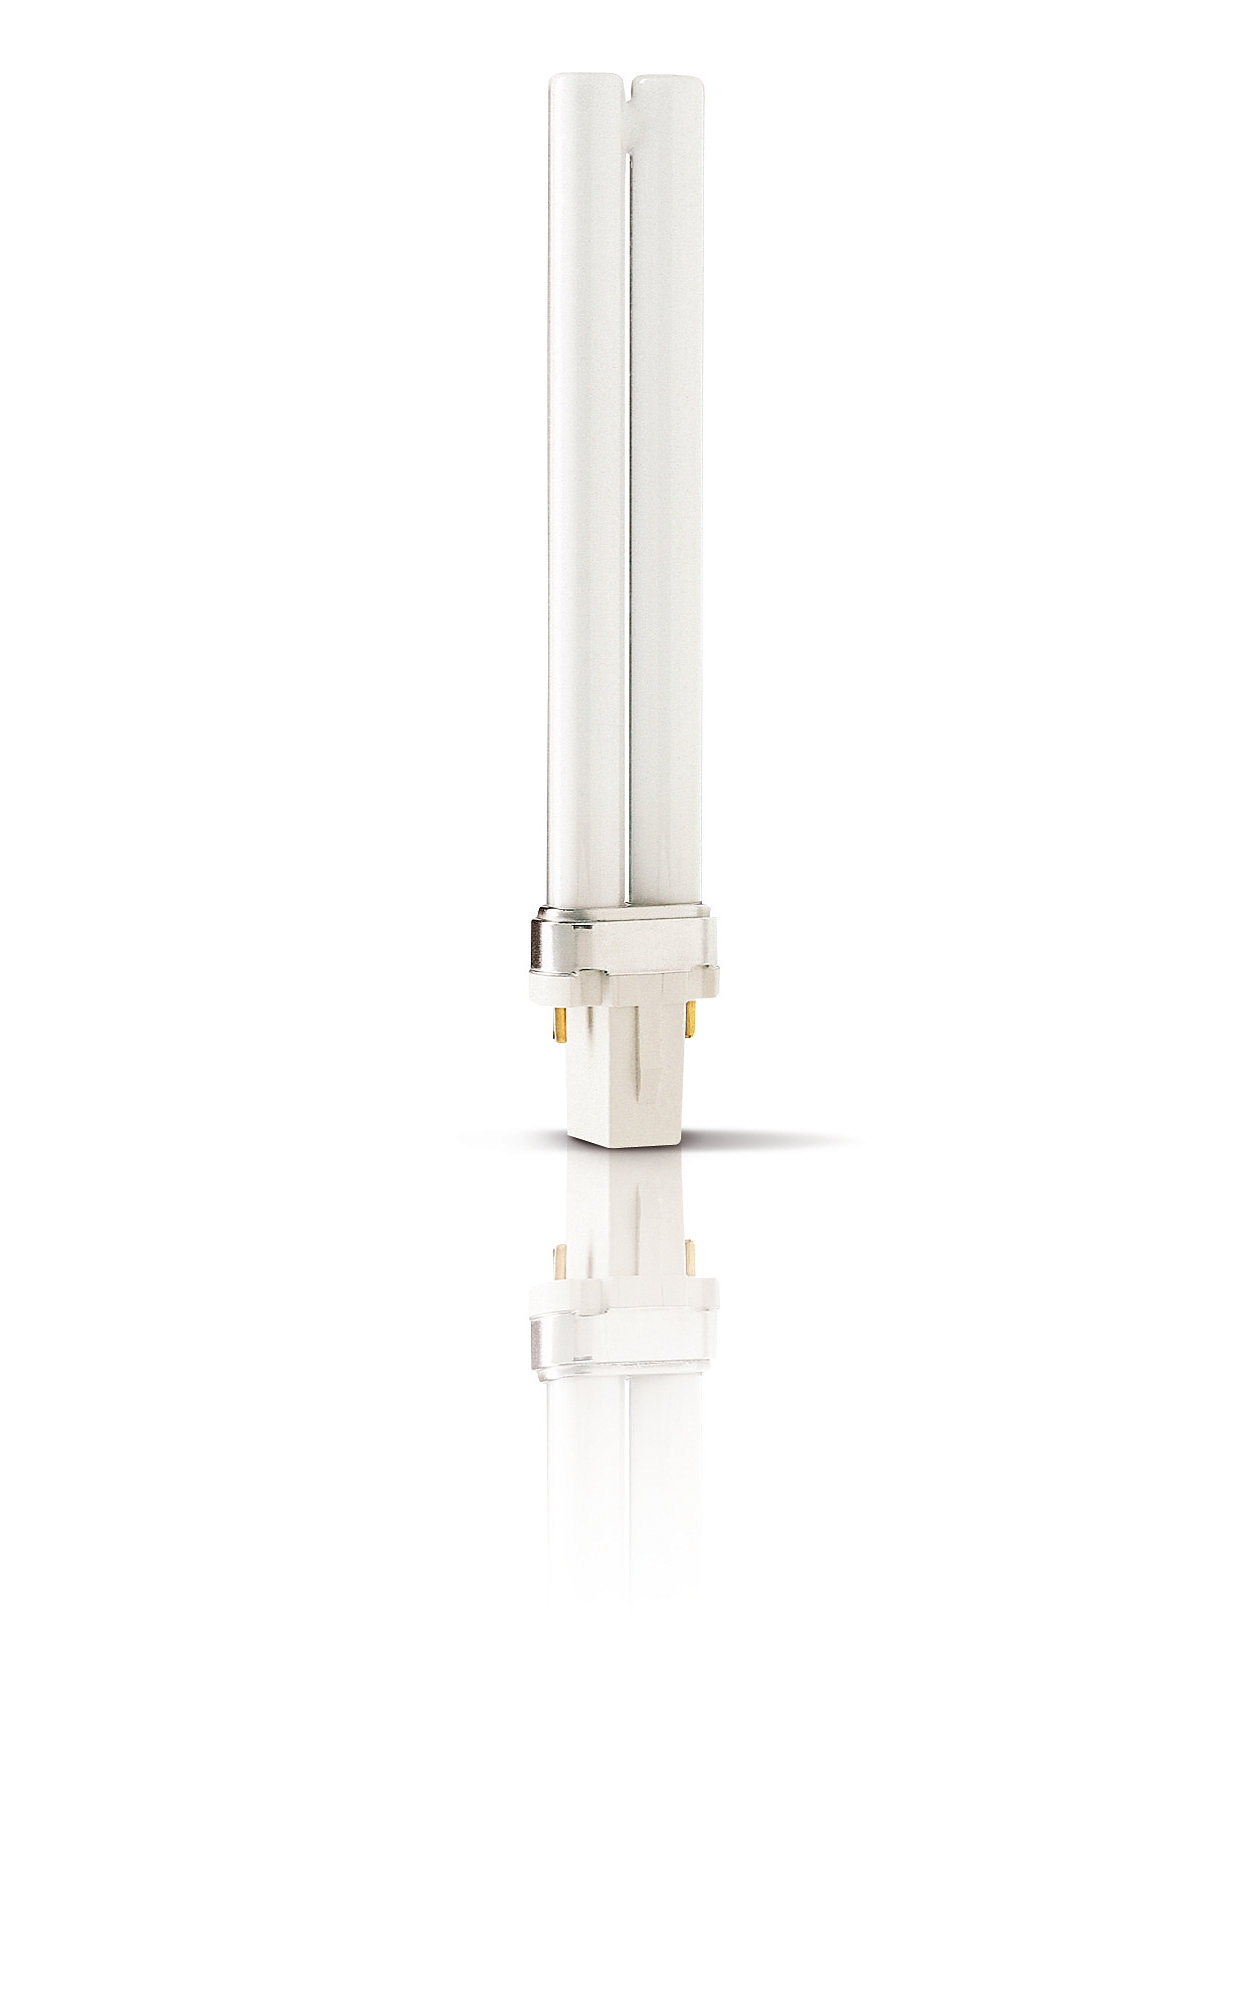 UV-B PL-L/PL-S: lámparas NB de UV-B eficaces y compactas